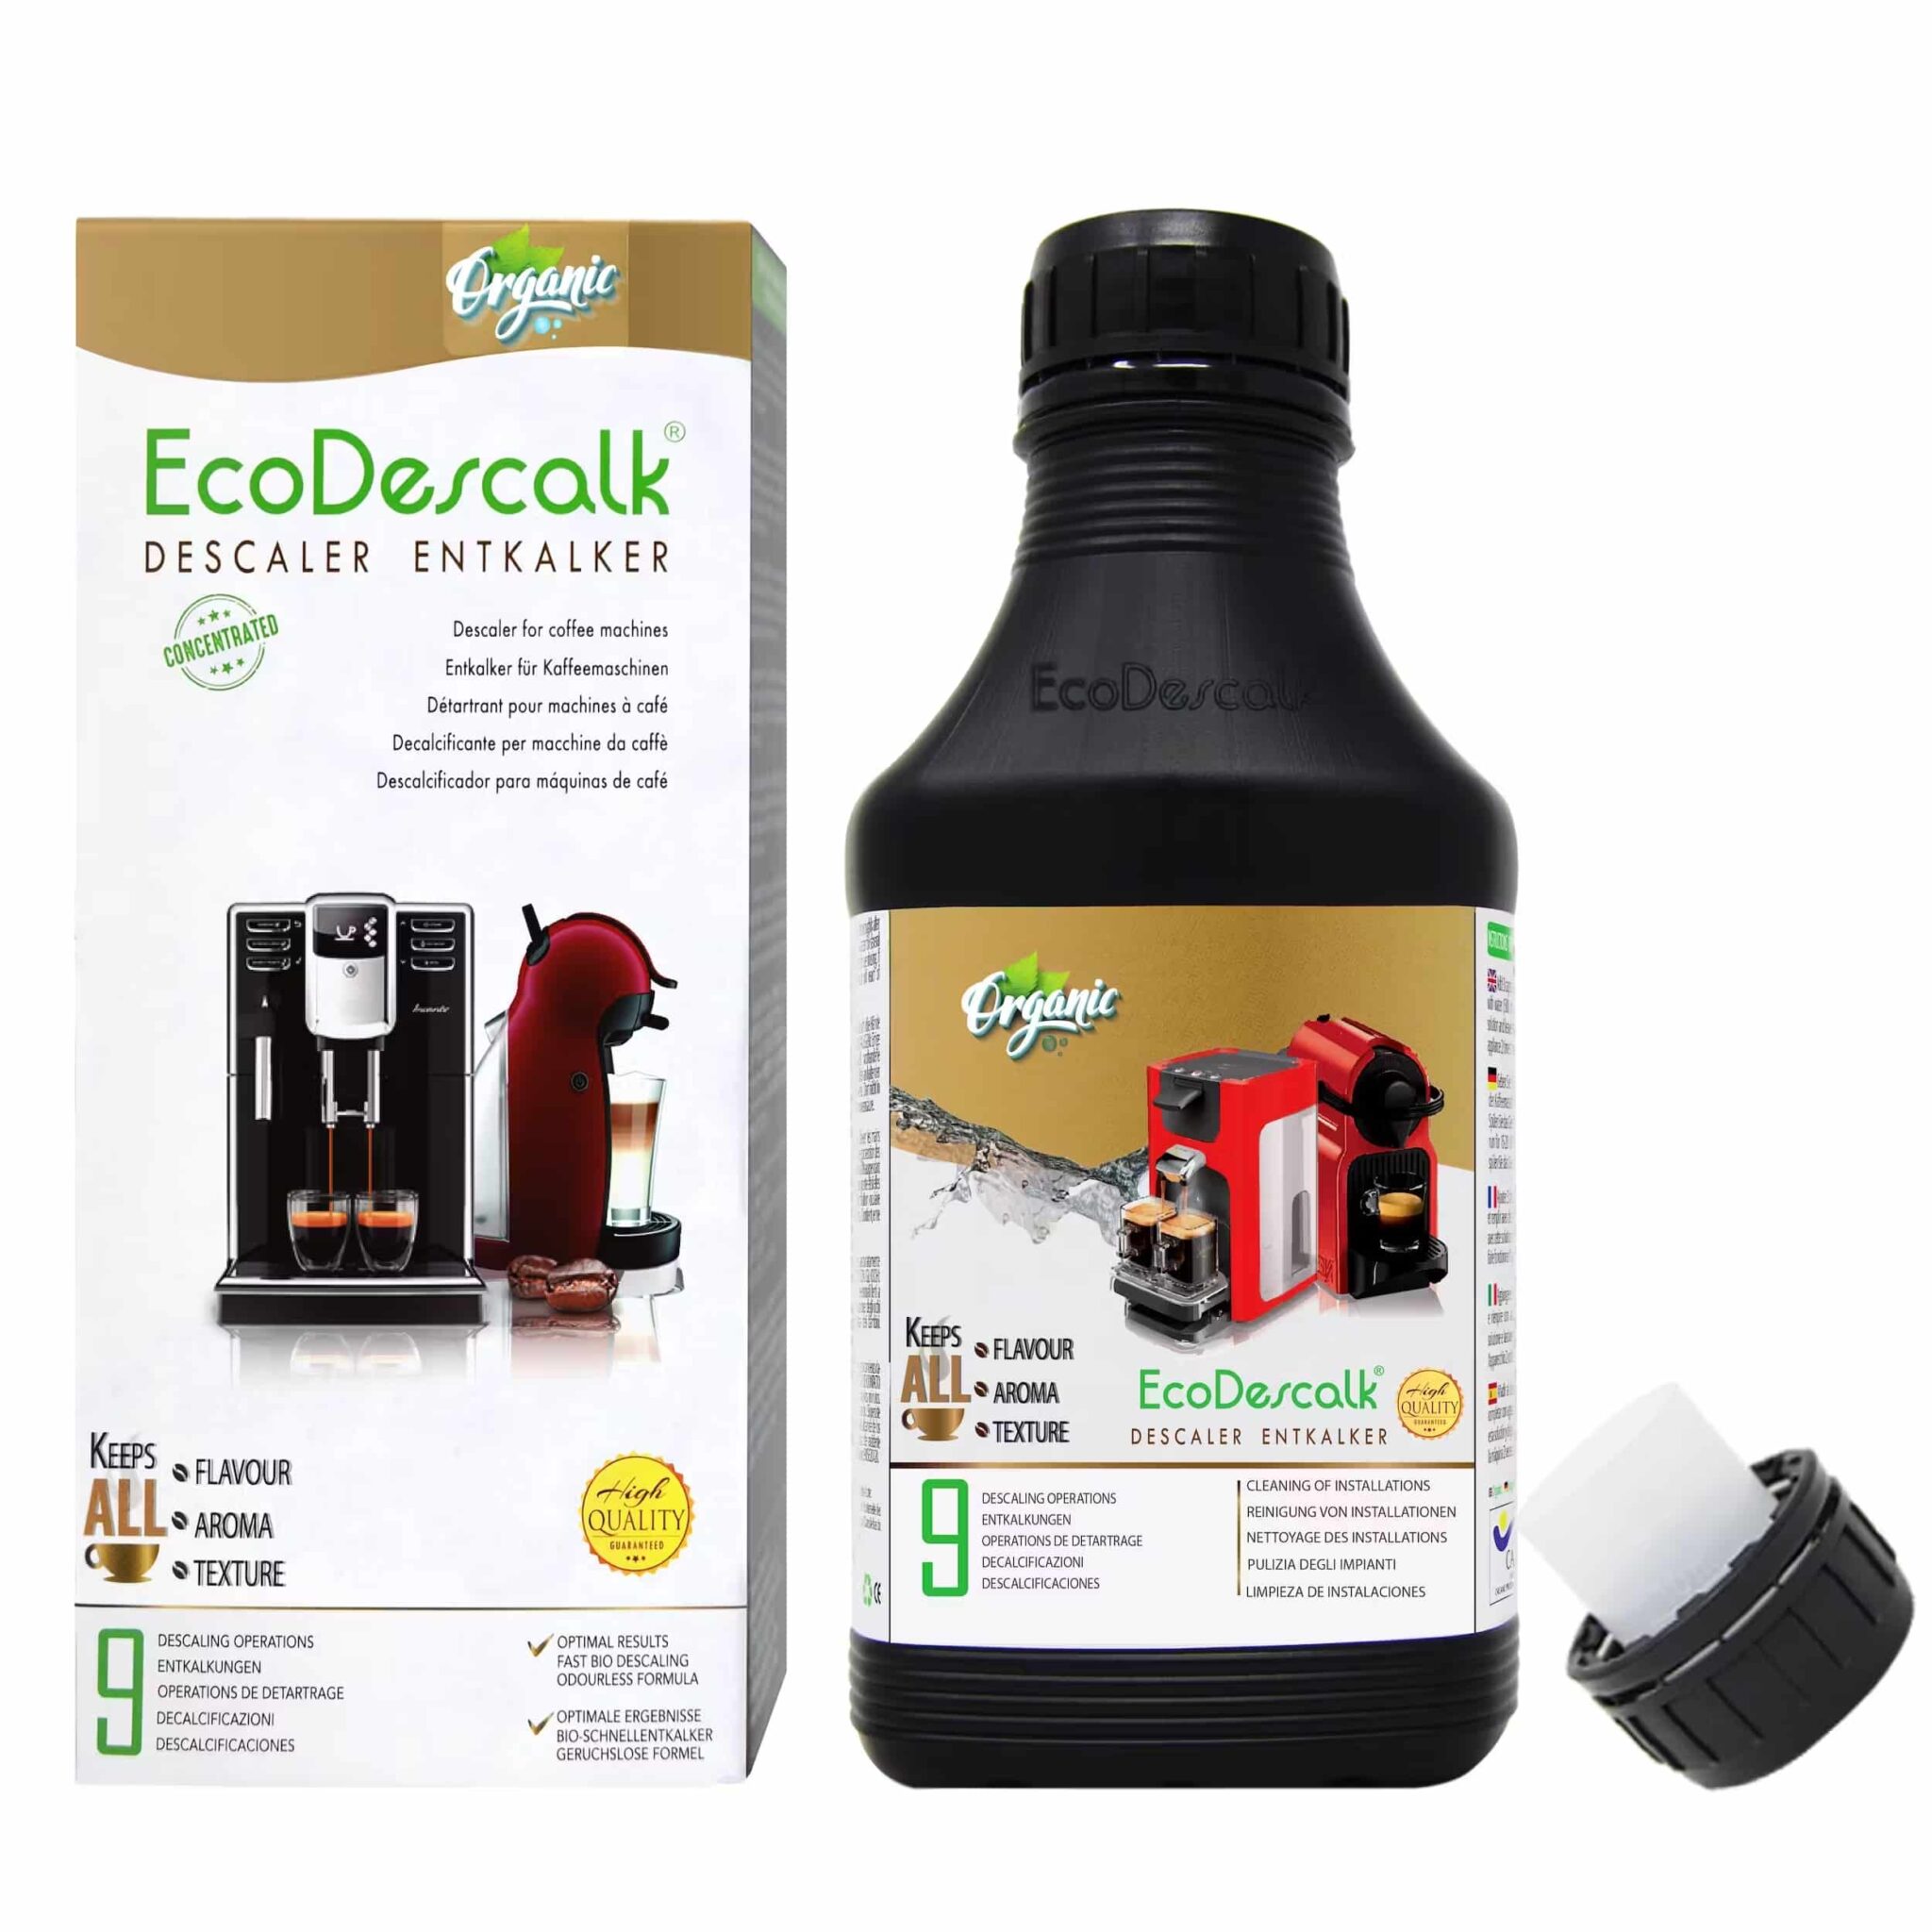 Eco antikalk organic scaled